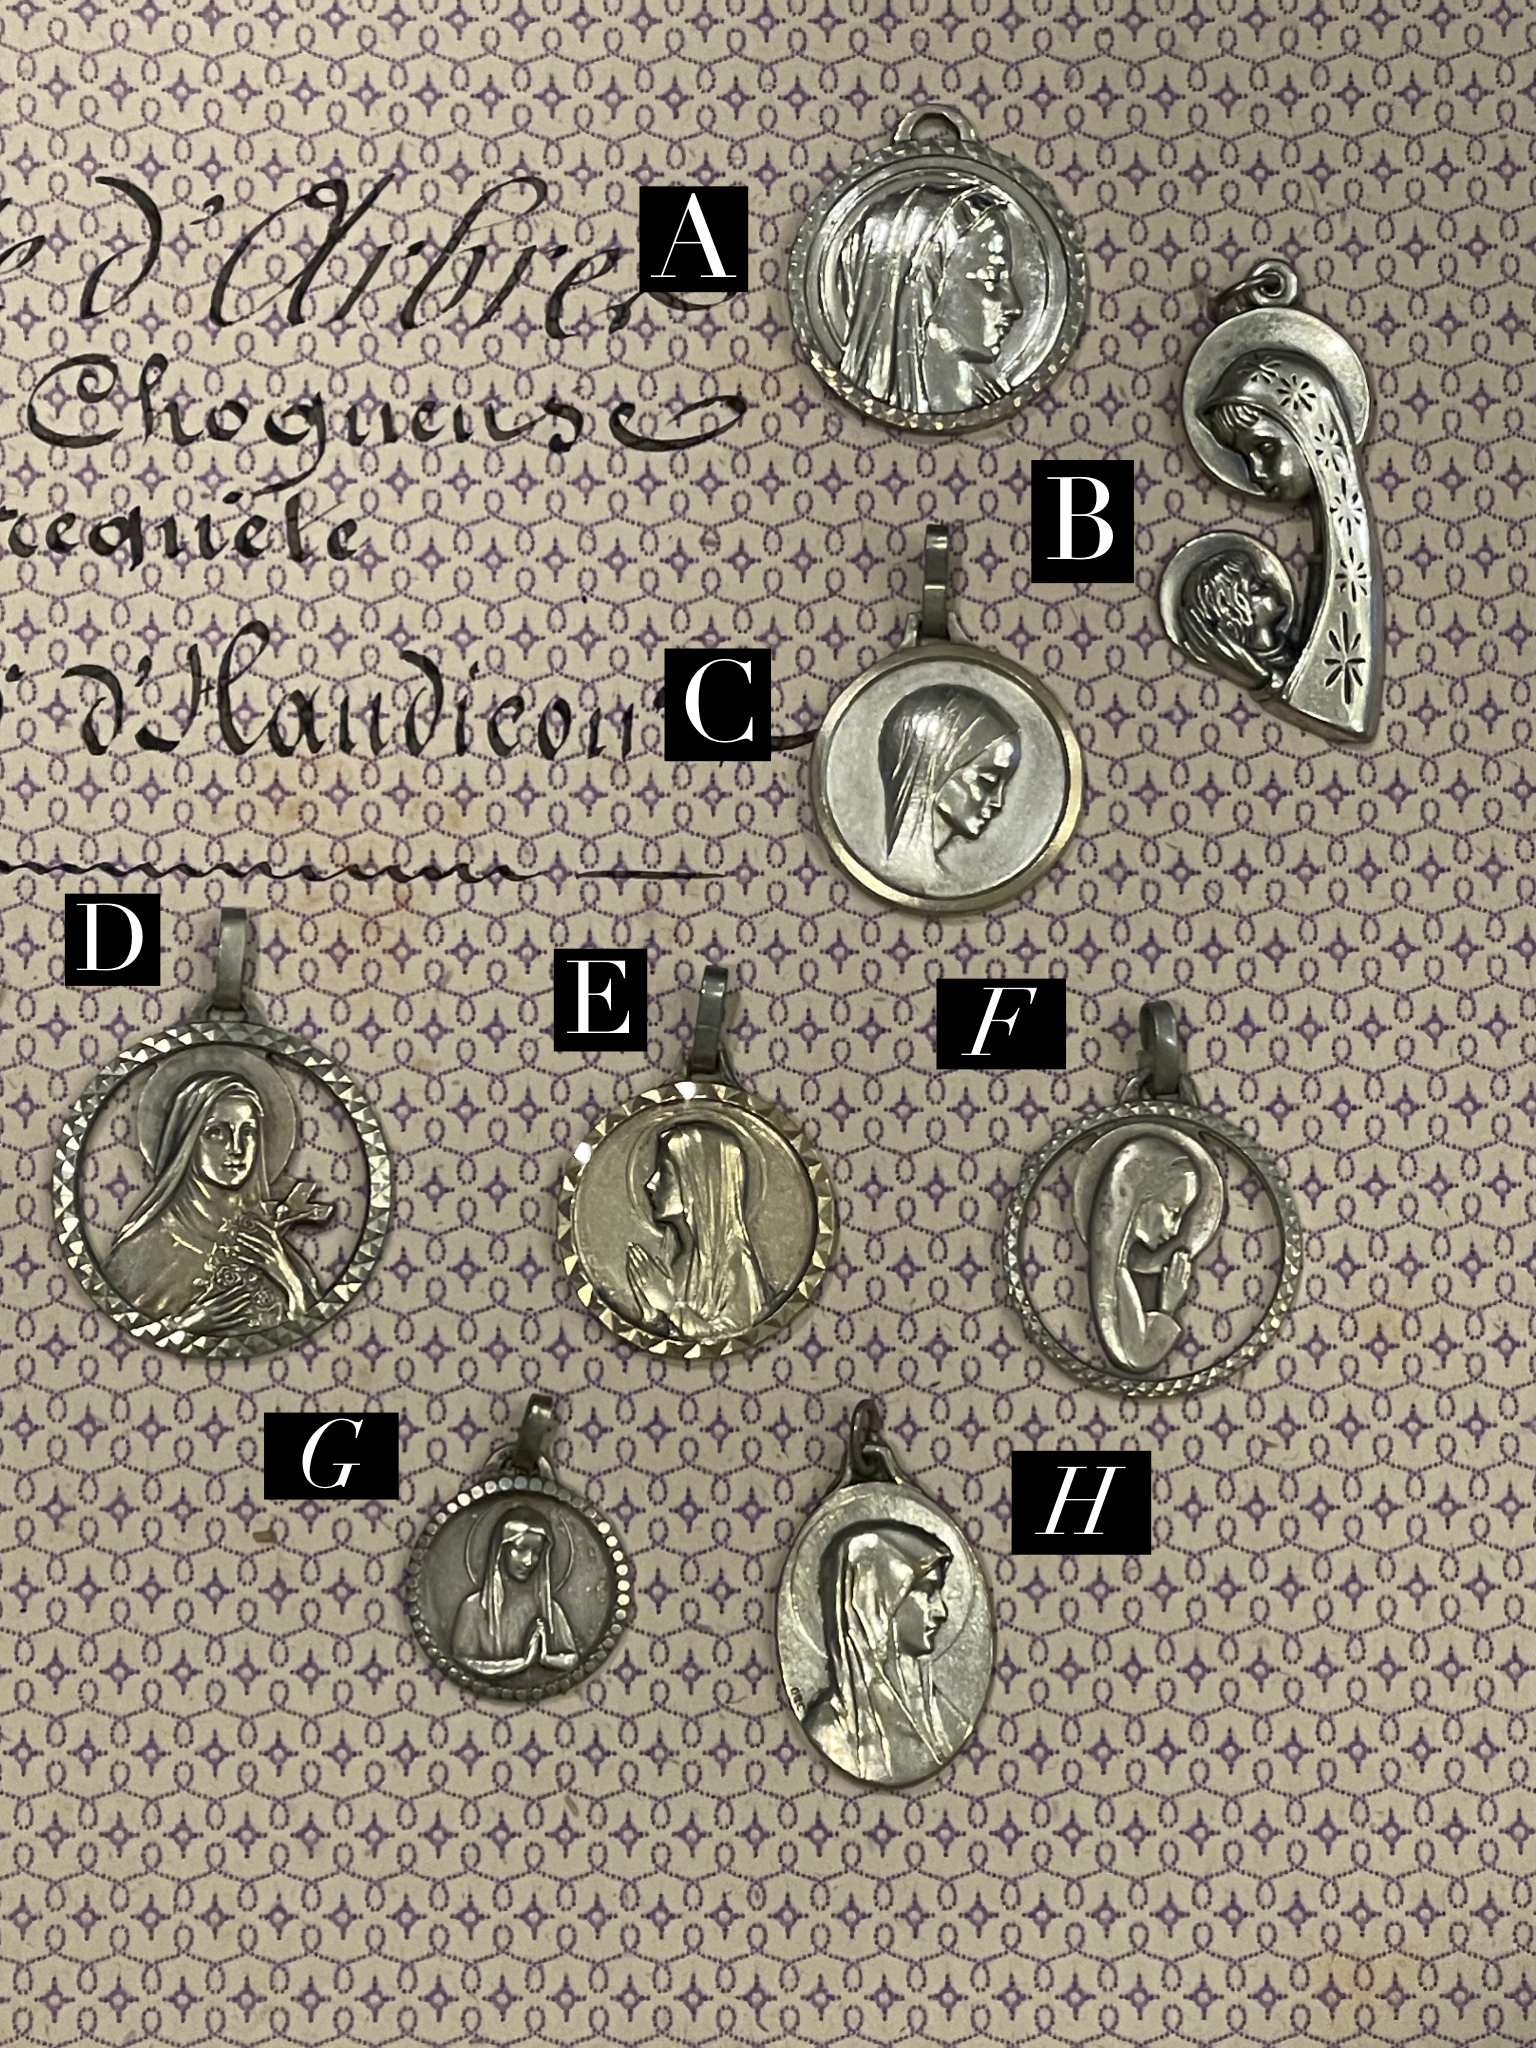 Original Vintage Medals from France - RM15